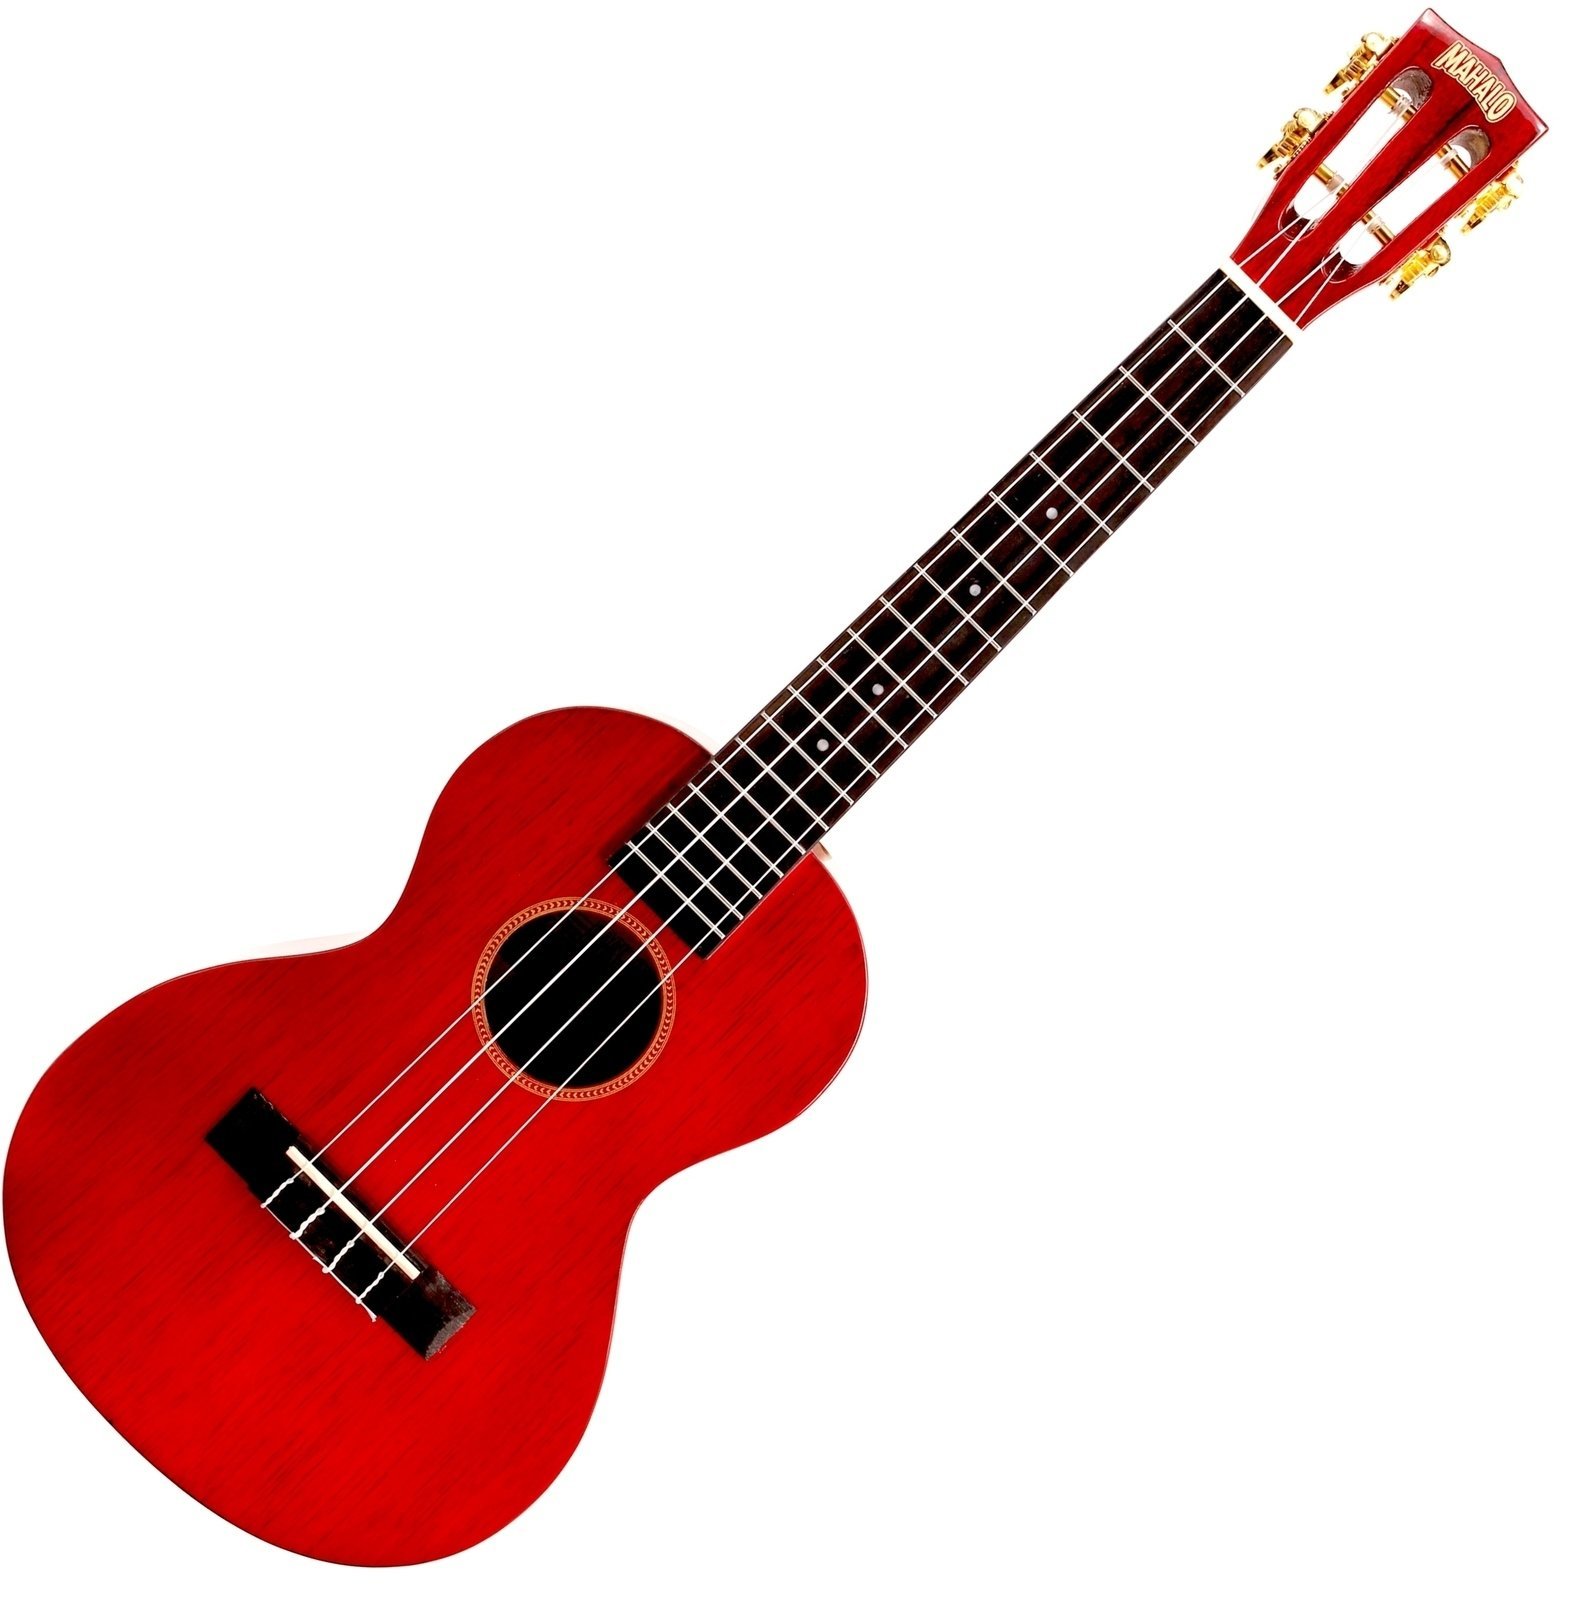 Tenor ukulele Mahalo Tenor Ukulele Trans Wine Red